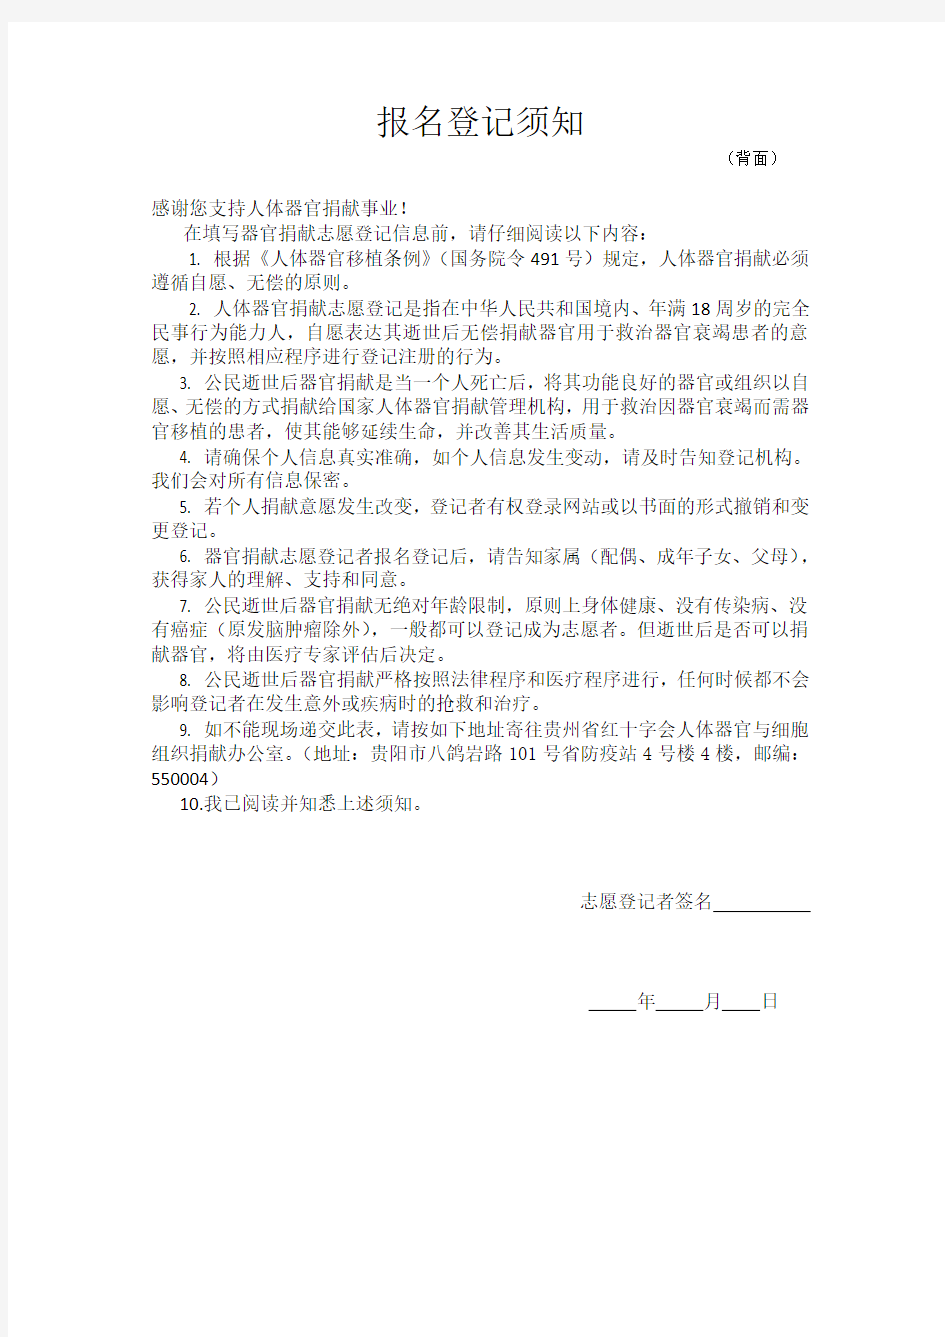 中国人体器官捐献志愿登记表 报名